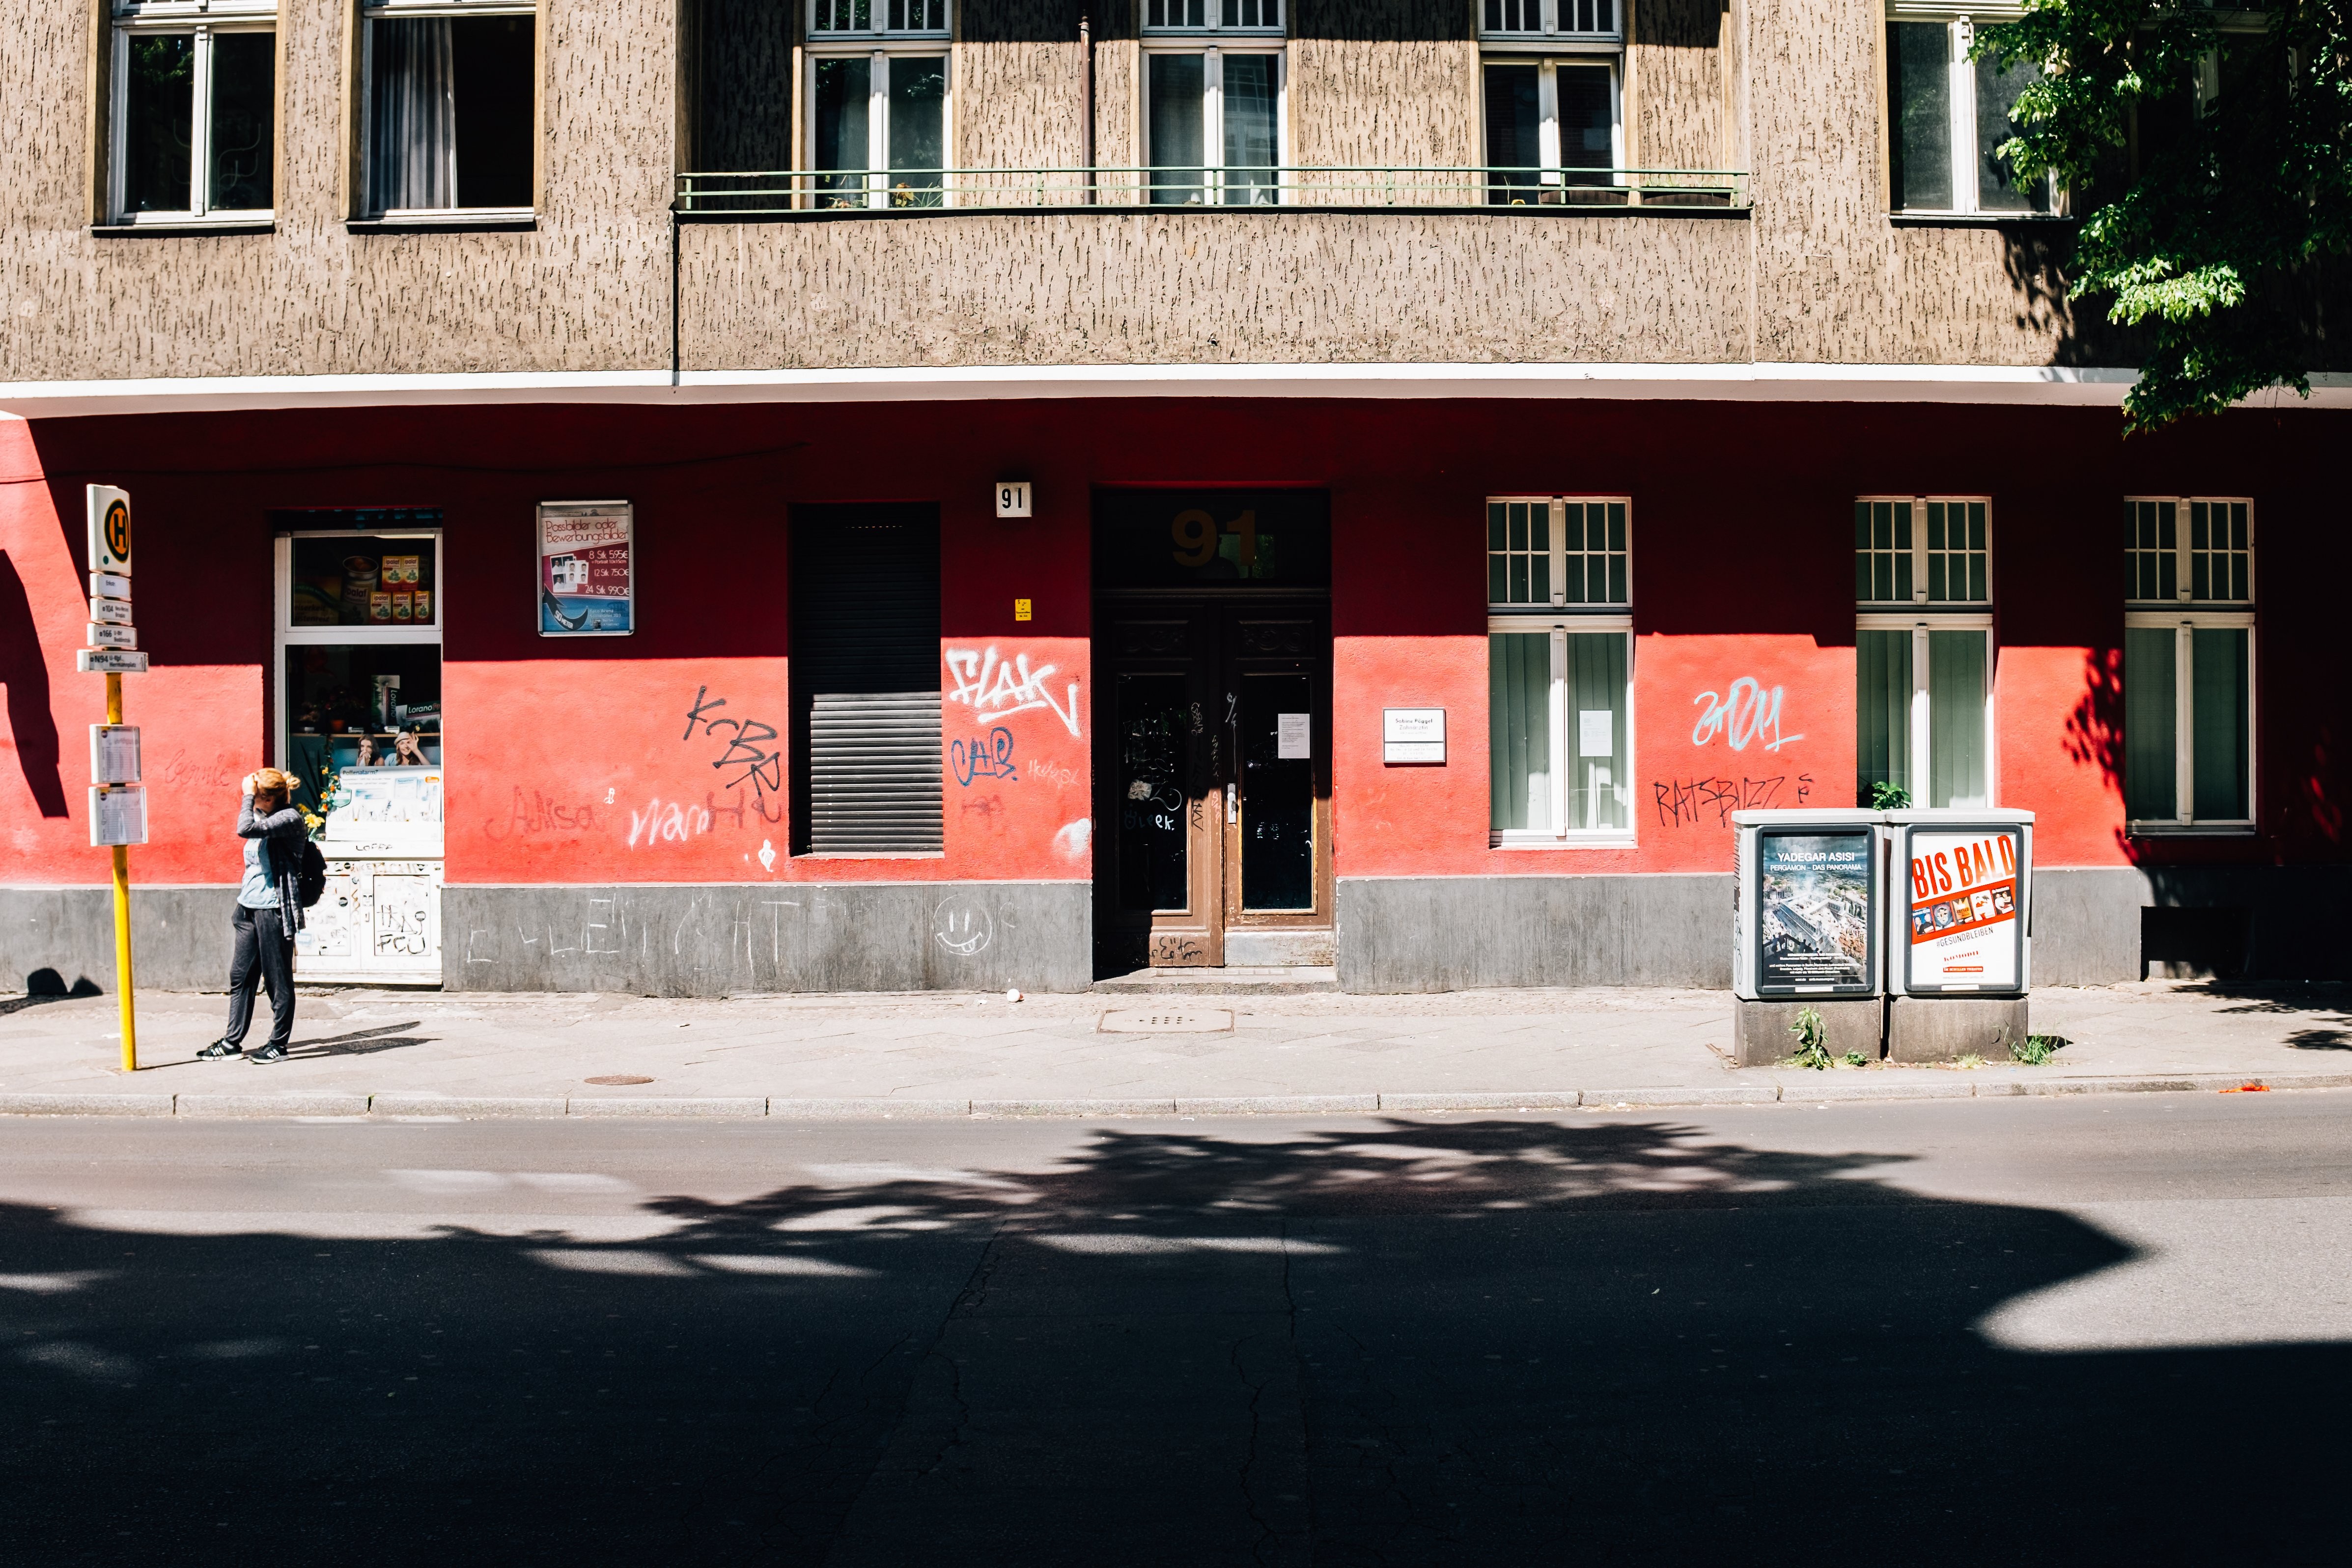 Bangunan Merah Dan Coklat Dengan Foto Graffiti 